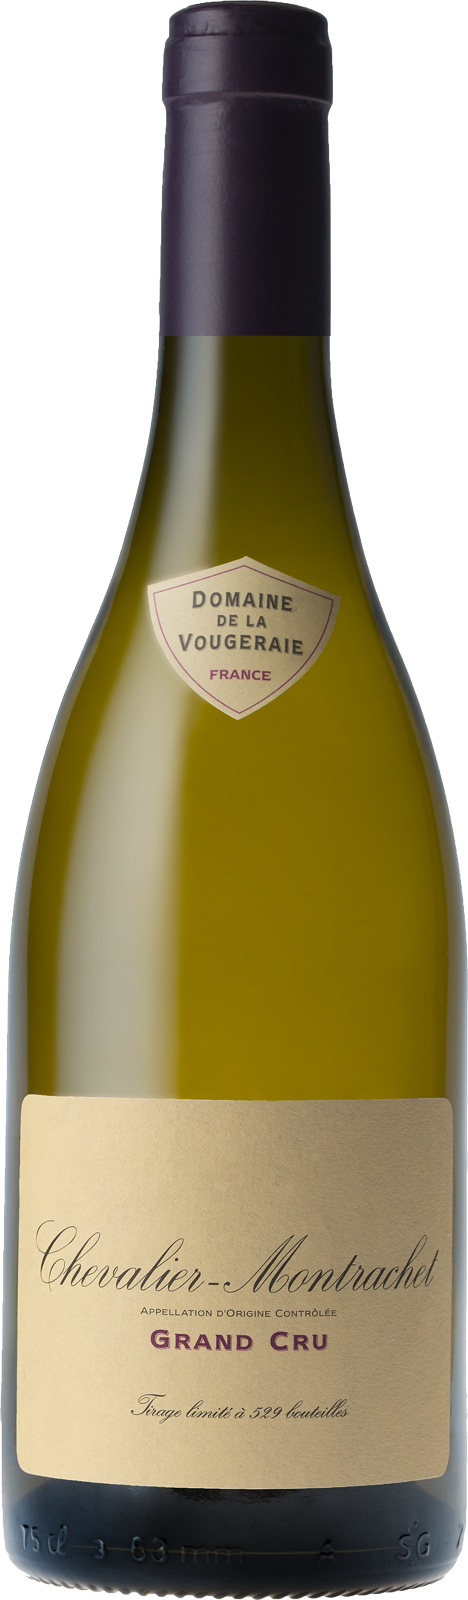 Chevalier montrachet grand cru 2016 Domaine VOUGERAIE, Bourgogne blanc